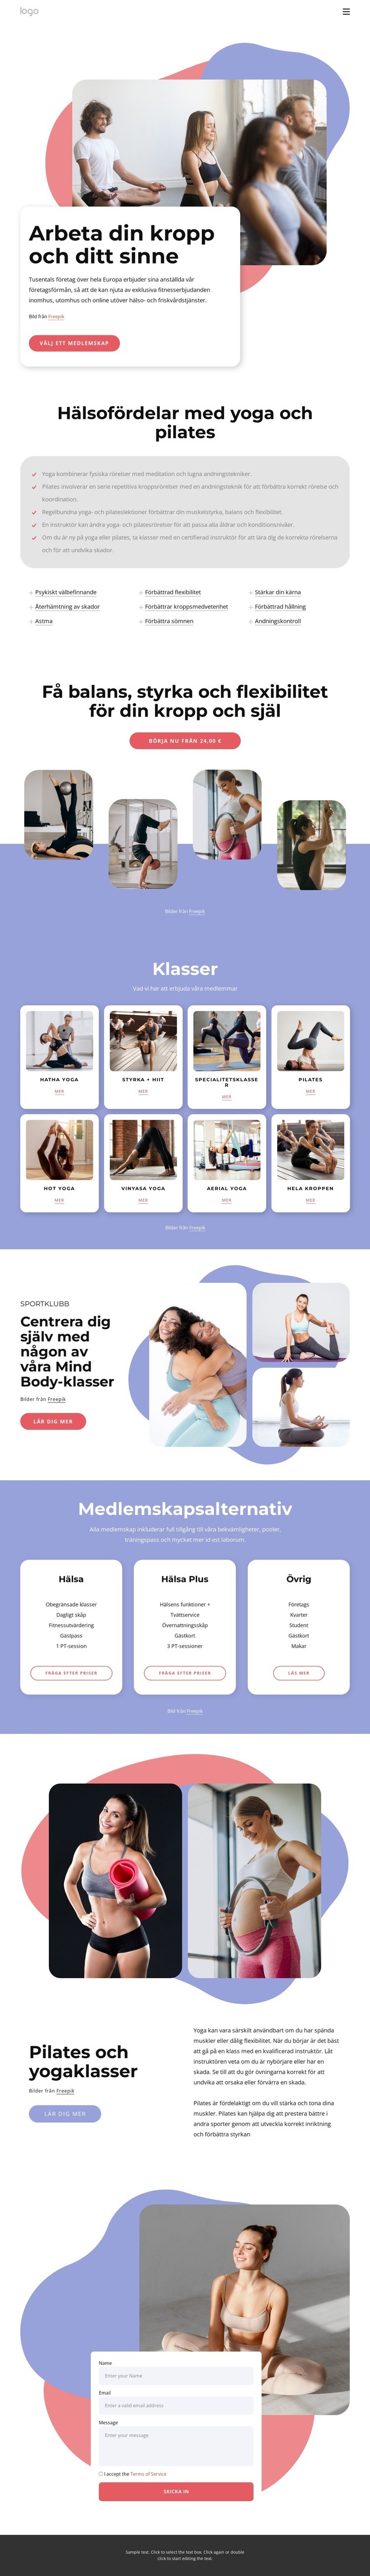 Pilates och yogaklasser Webbplats mall